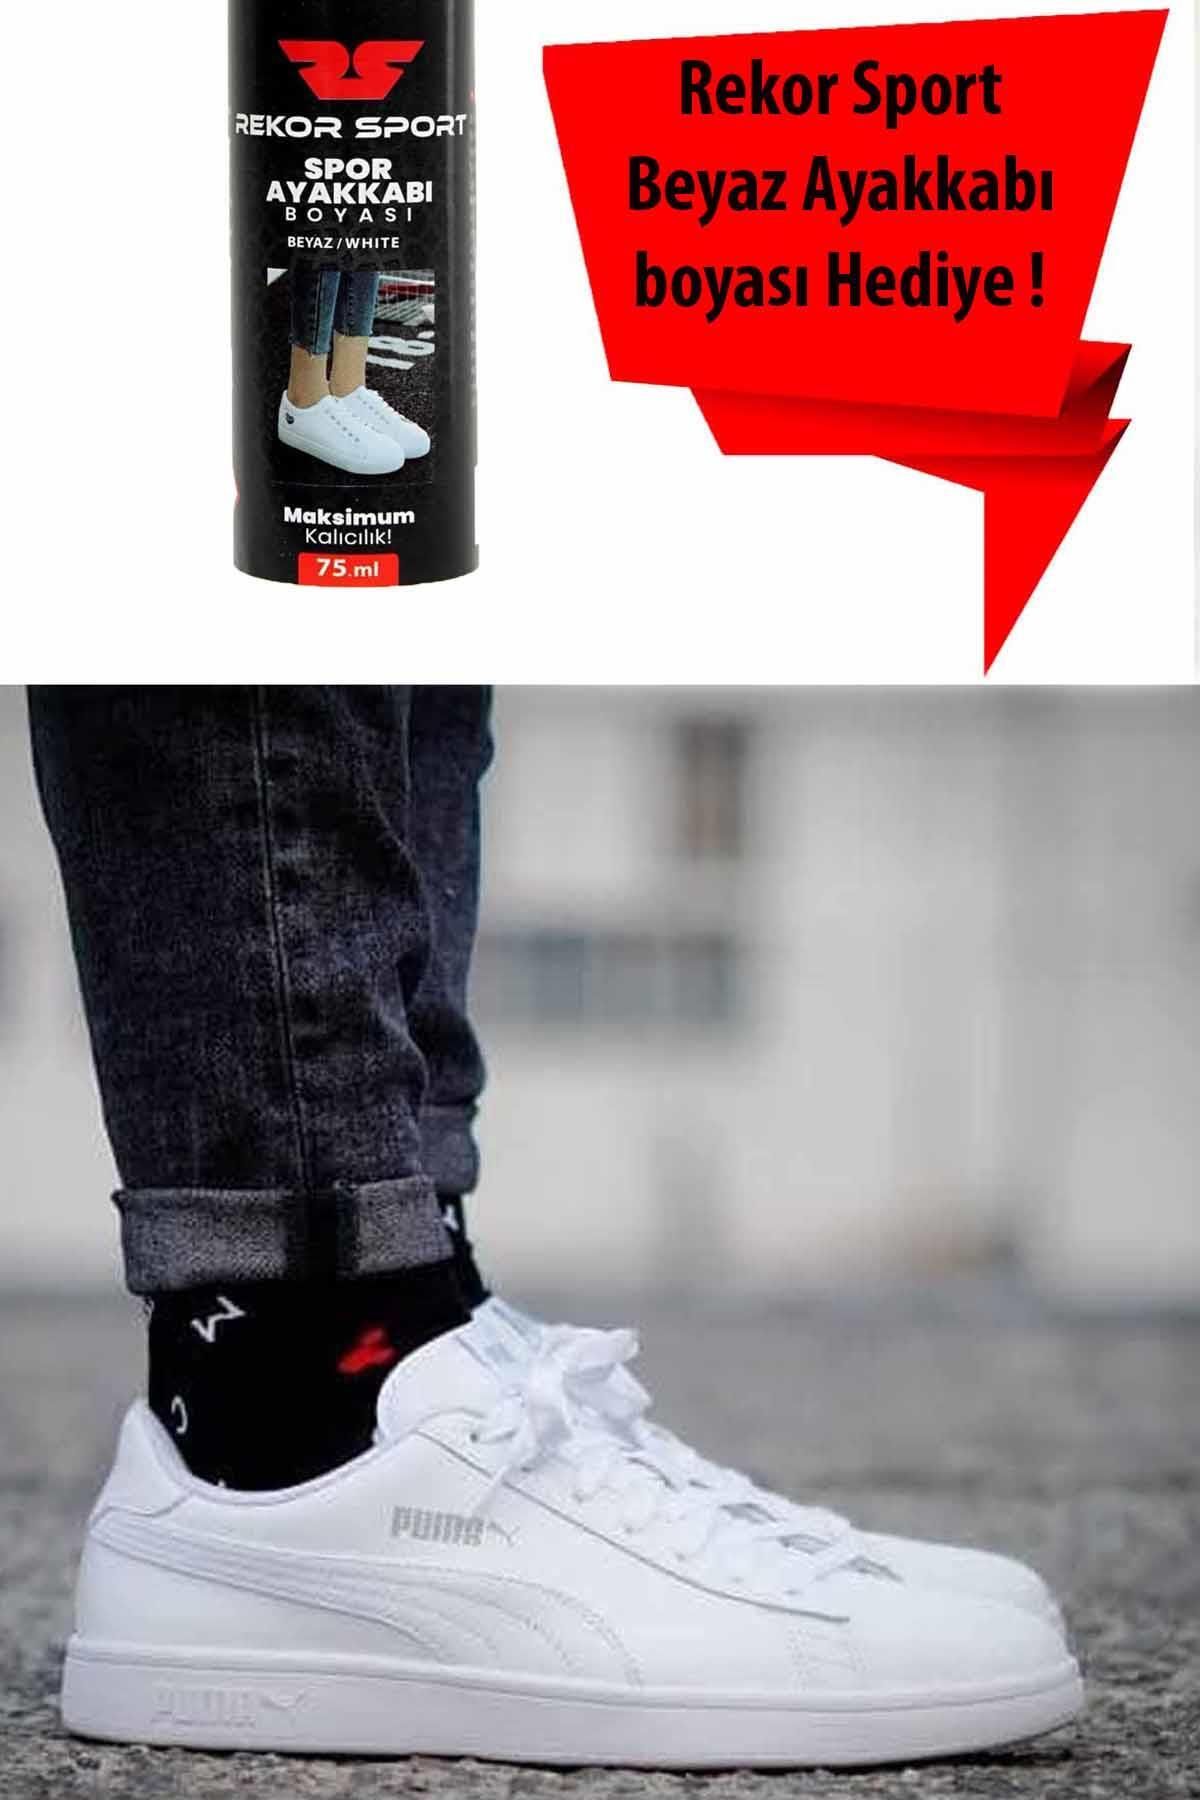 Puma Smash 3.0 (Beyaz Spor Ayakkabı Boyası Hediyeli ) Unisex Sneaker Ayakkabı 392336-09 BEYAZ